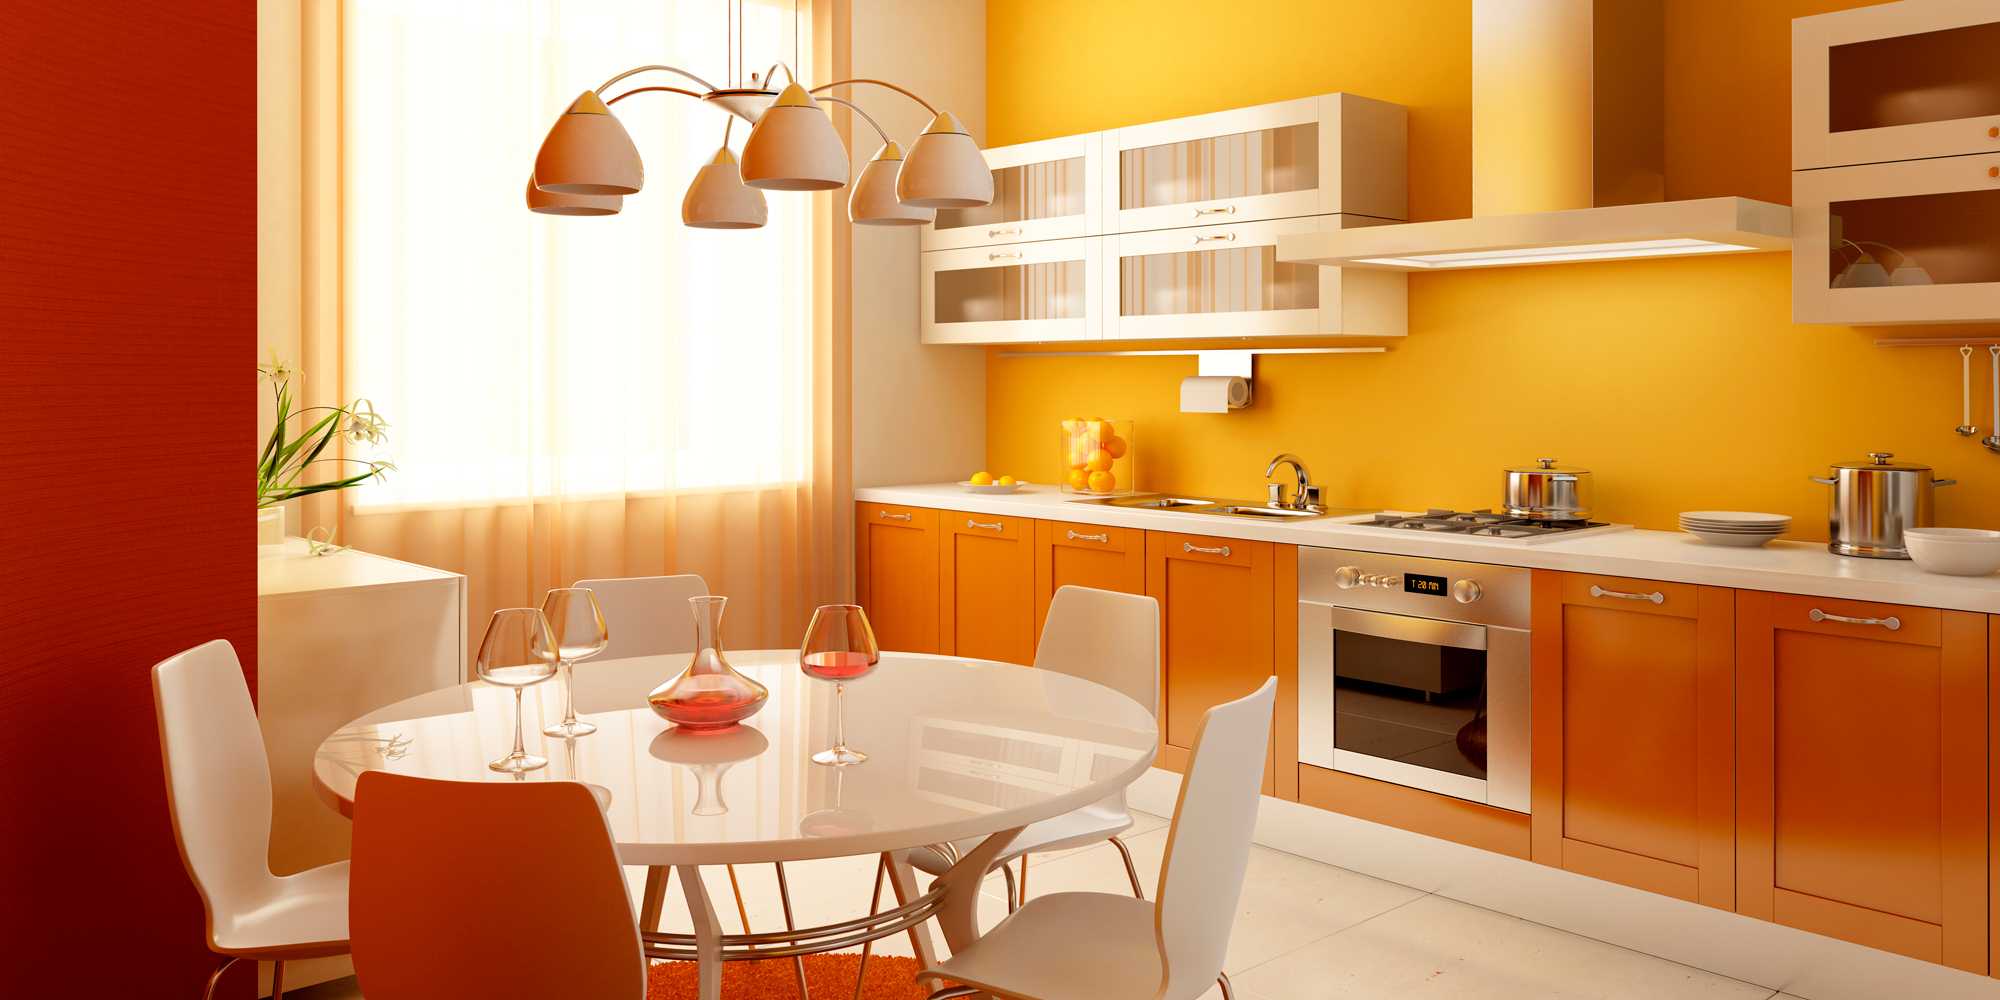 een combinatie van fel oranje in de stijl van de slaapkamer met andere kleuren